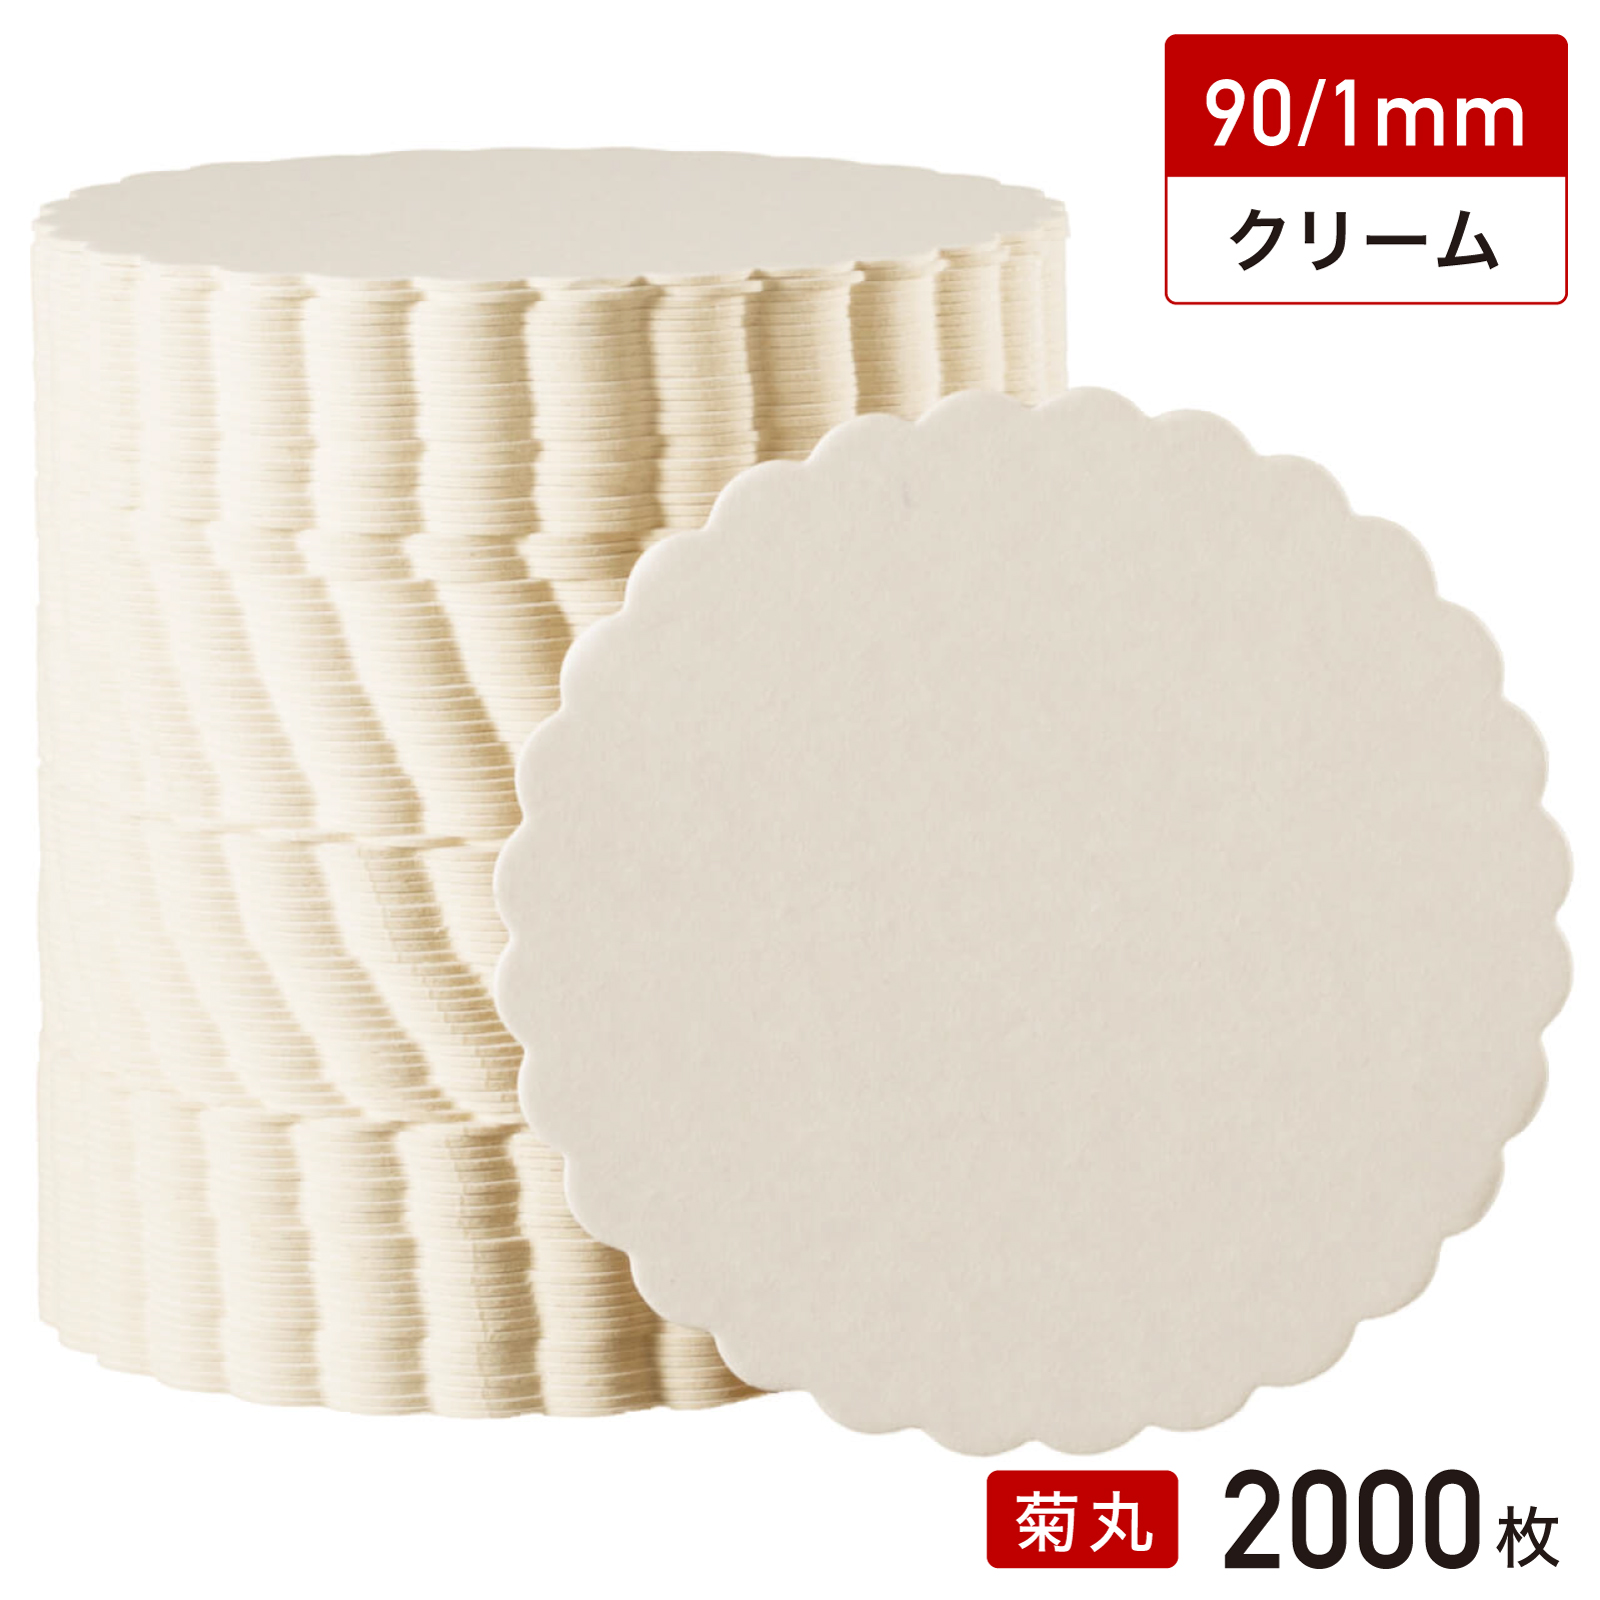 松山 紙 コースター 菊丸型 90/1mm（クリーム無地）2000枚 コースターの商品画像